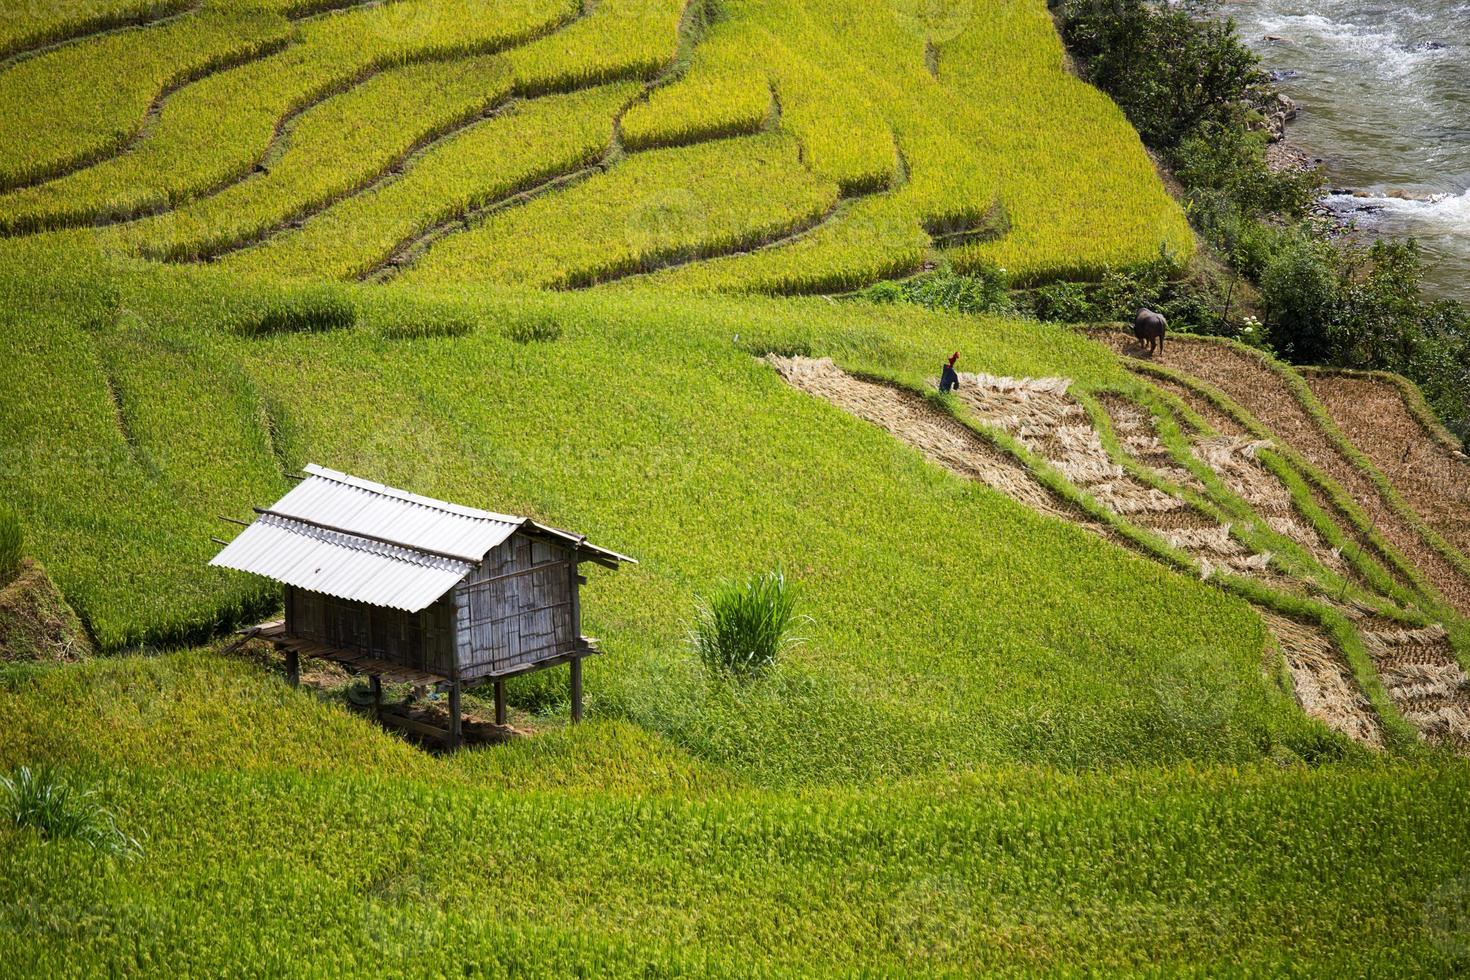 granja de arroz en vietnam foto